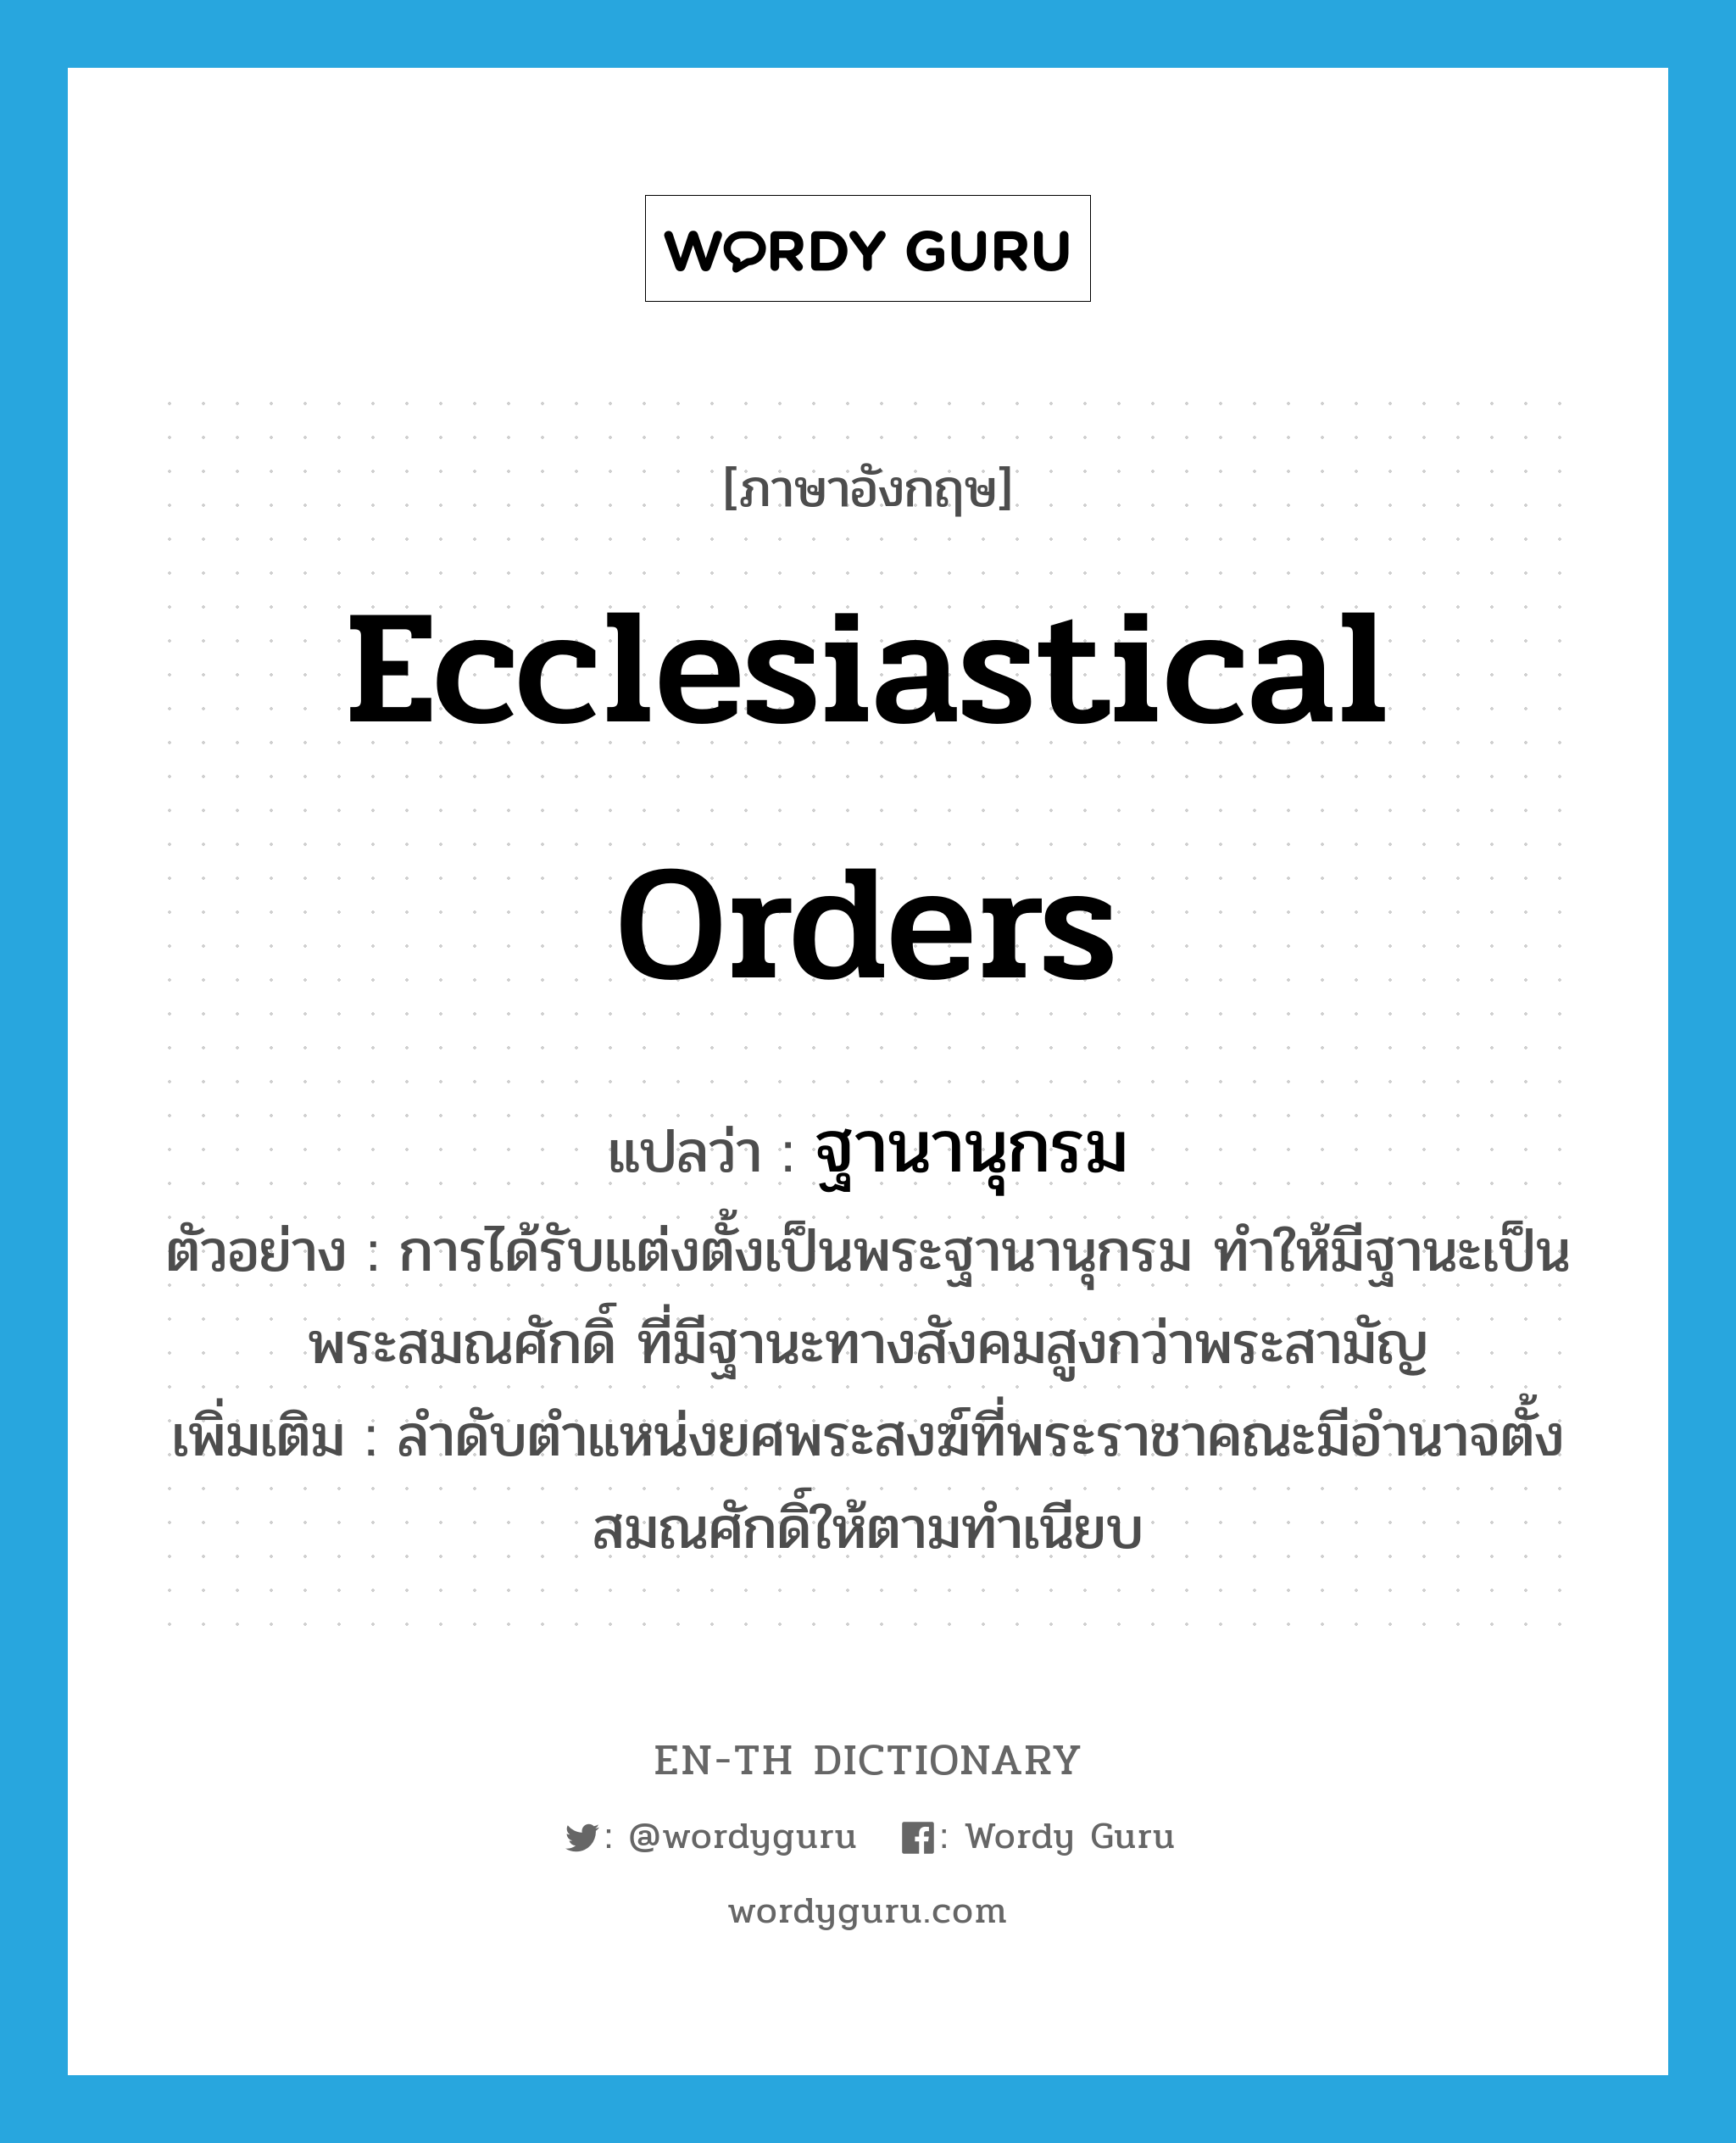 ecclesiastical orders แปลว่า?, คำศัพท์ภาษาอังกฤษ ecclesiastical orders แปลว่า ฐานานุกรม ประเภท N ตัวอย่าง การได้รับแต่งตั้งเป็นพระฐานานุกรม ทำให้มีฐานะเป็นพระสมณศักดิ์ ที่มีฐานะทางสังคมสูงกว่าพระสามัญ เพิ่มเติม ลำดับตำแหน่งยศพระสงฆ์ที่พระราชาคณะมีอำนาจตั้งสมณศักดิ์ให้ตามทำเนียบ หมวด N